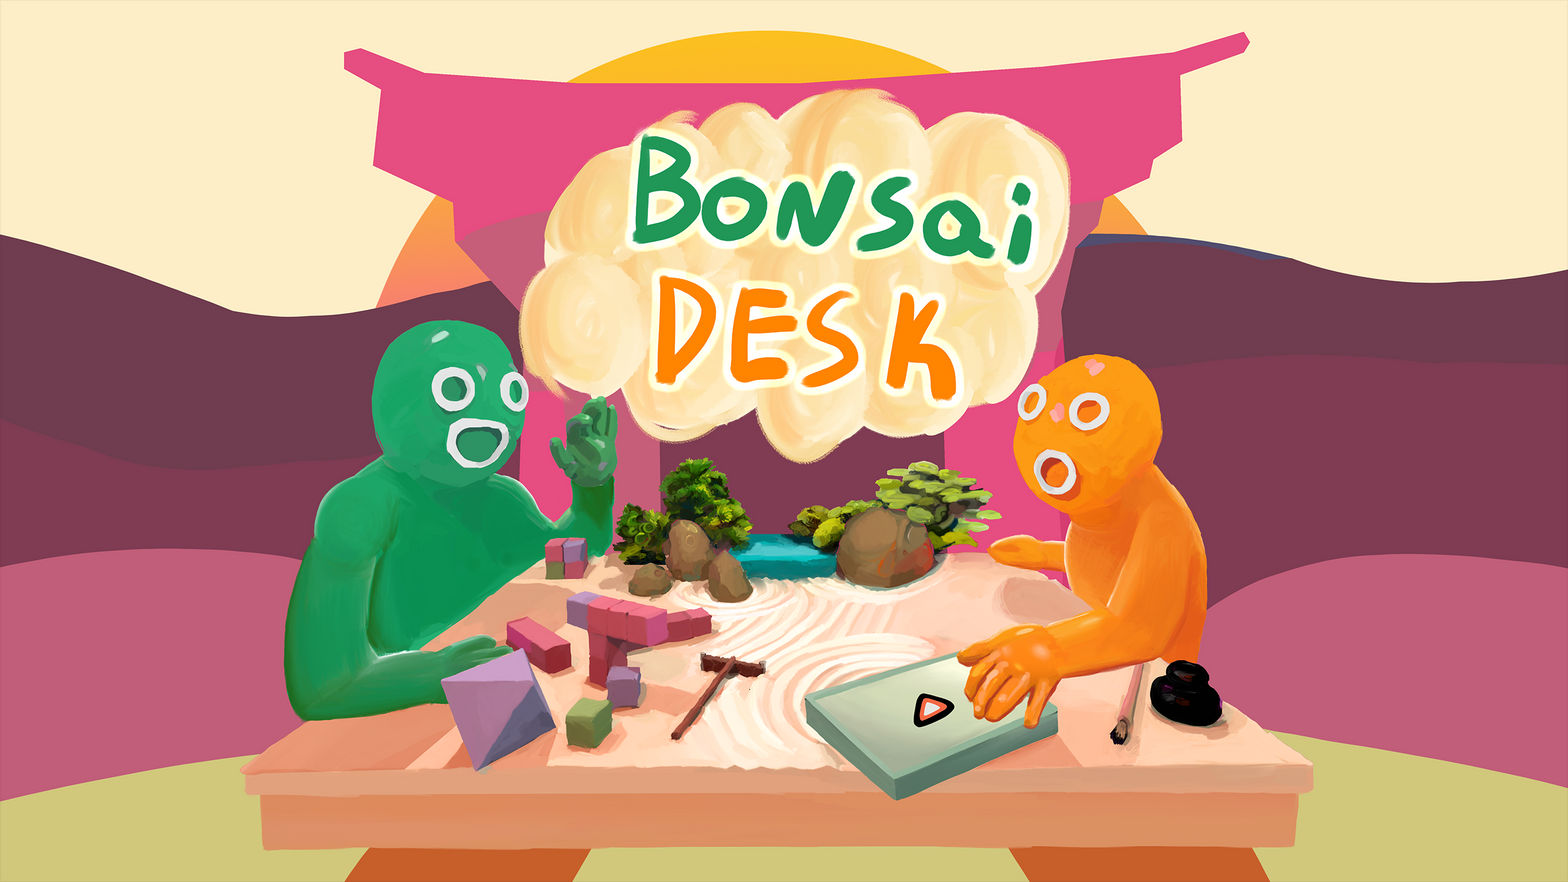 Bonsai Desk